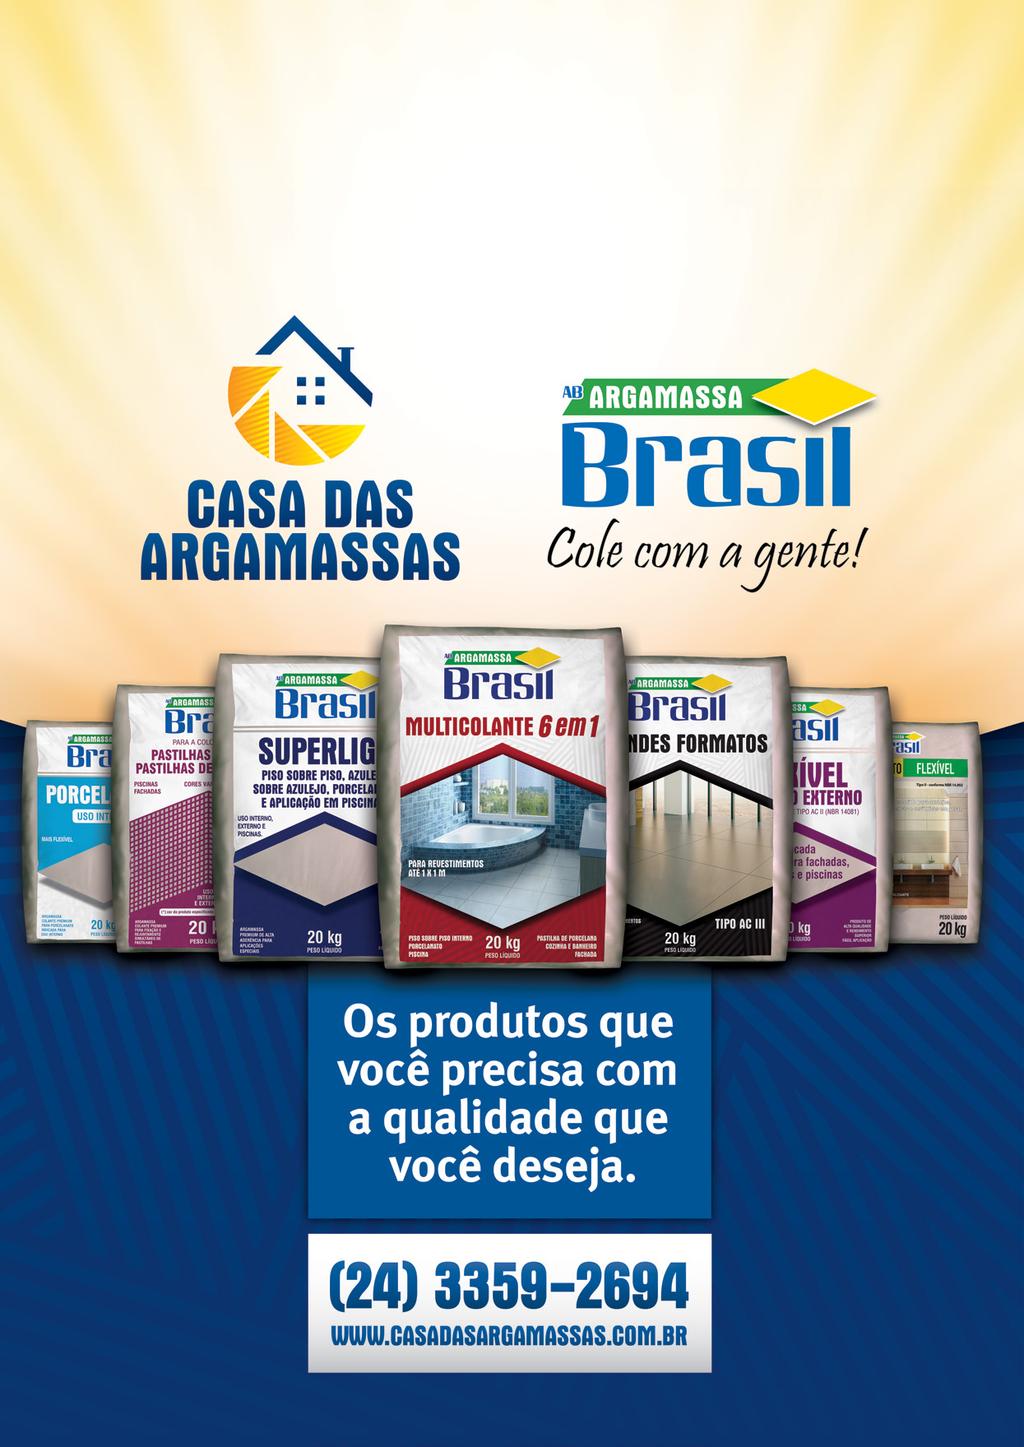 Focada no atendimento, logística diferenciada e qualidade dos produtos, a Argamassa Brasil conquistou, de forma rápida, respeito e admiração do mercado da construção civil no estado do Rio de Janeiro.